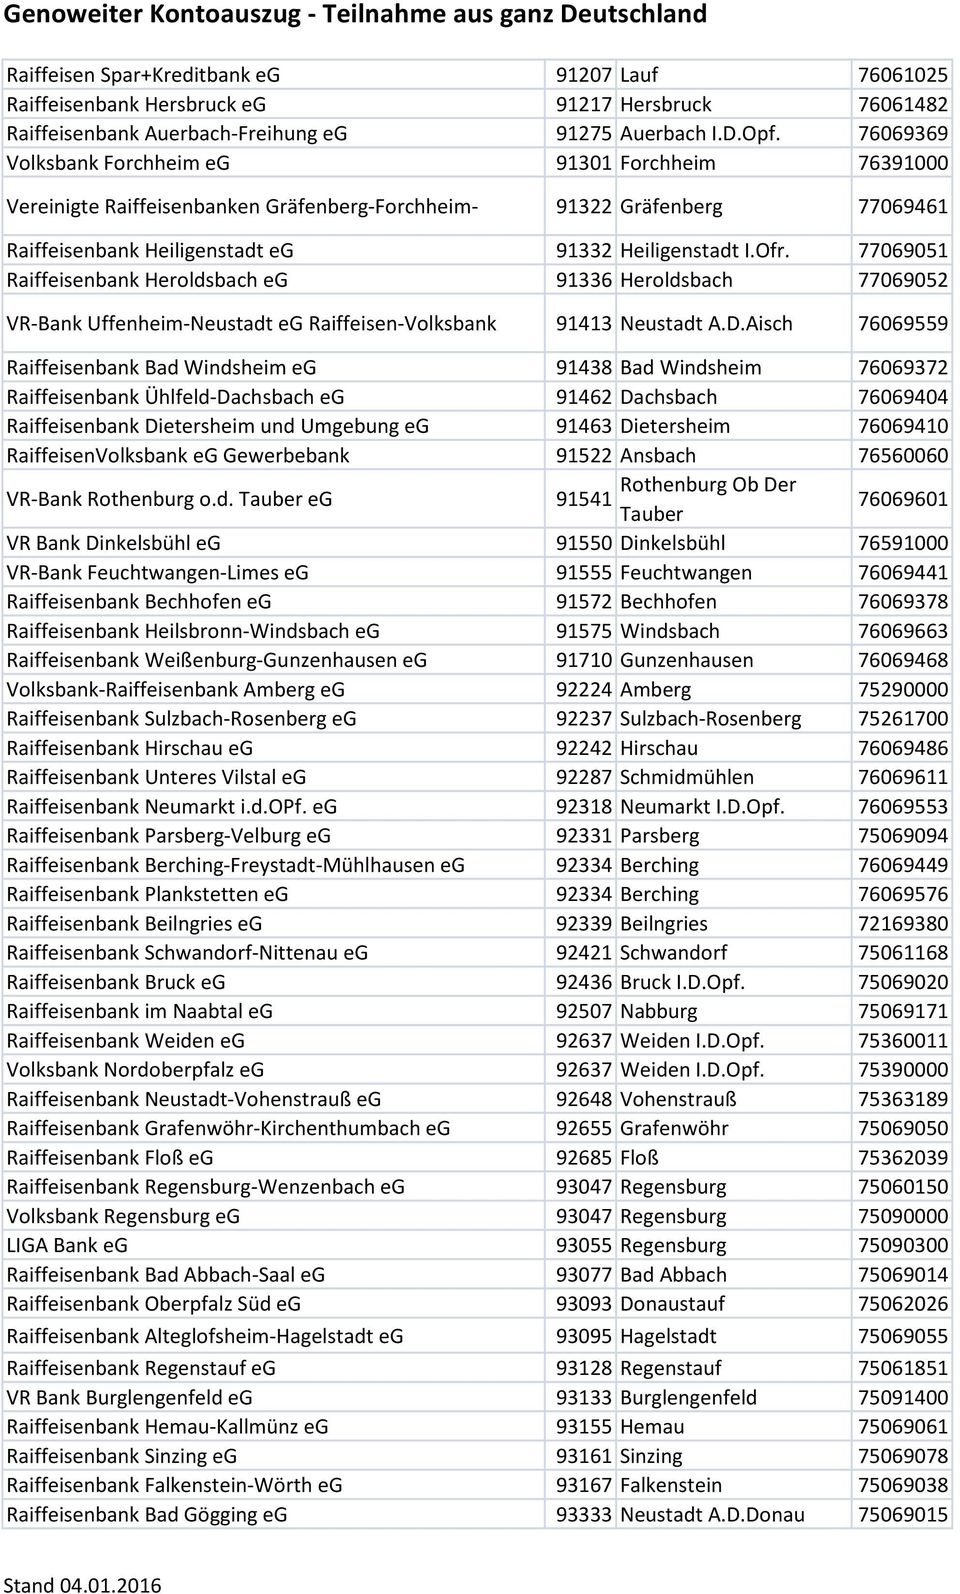 77069051 Raiffeisenbank Heroldsbach eg 91336 Heroldsbach 77069052 VR-Bank Uffenheim-Neustadt eg Raiffeisen-Volksbank 91413 Neustadt A.D.